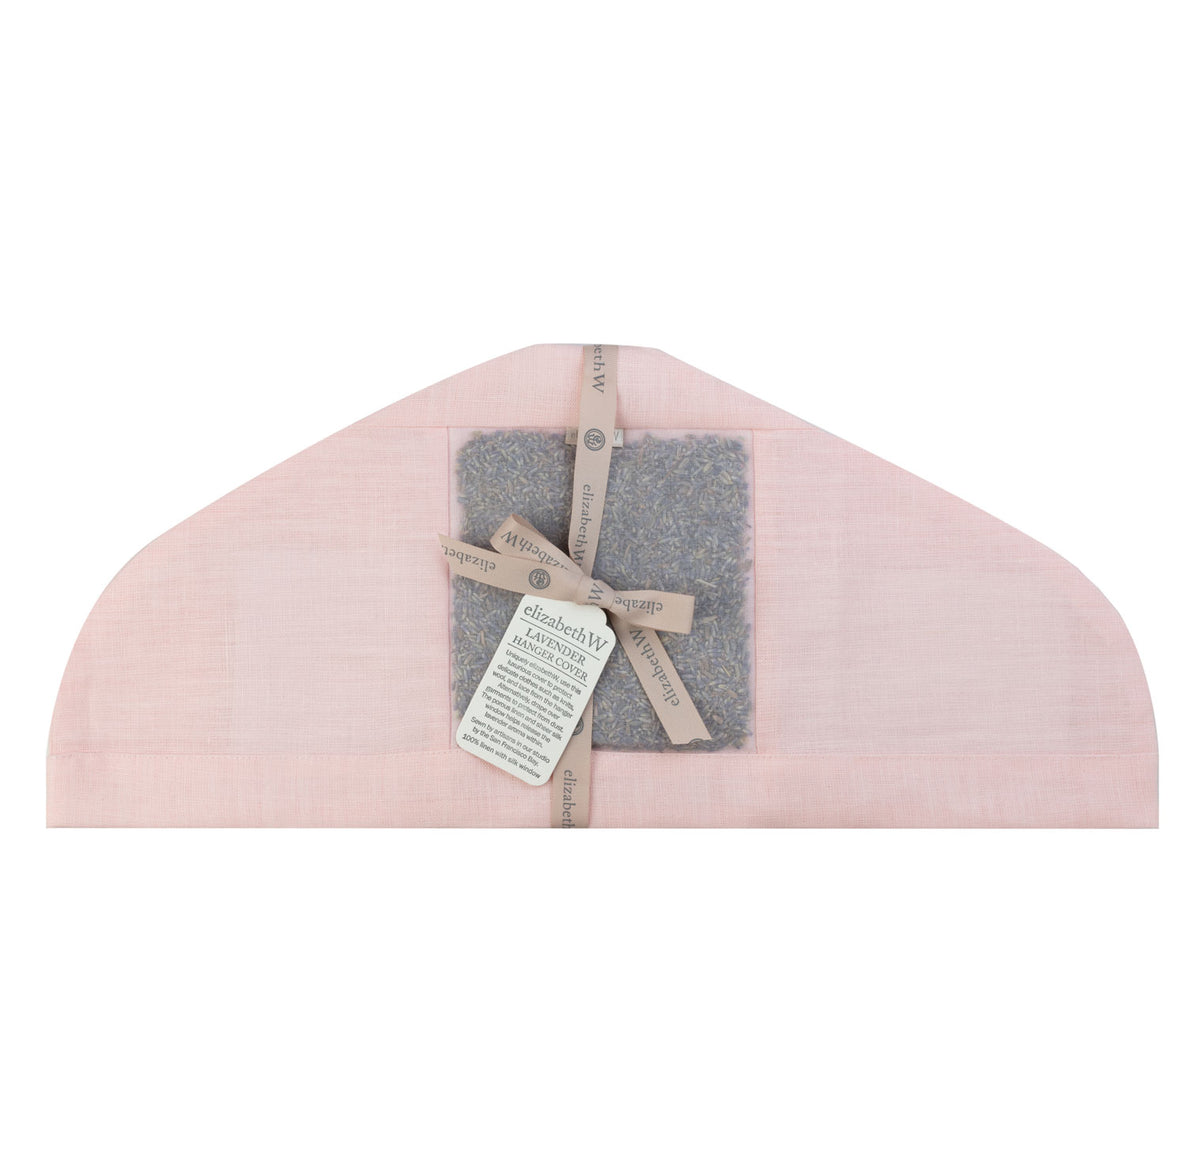 lavender filled in a pink linen hanger cover